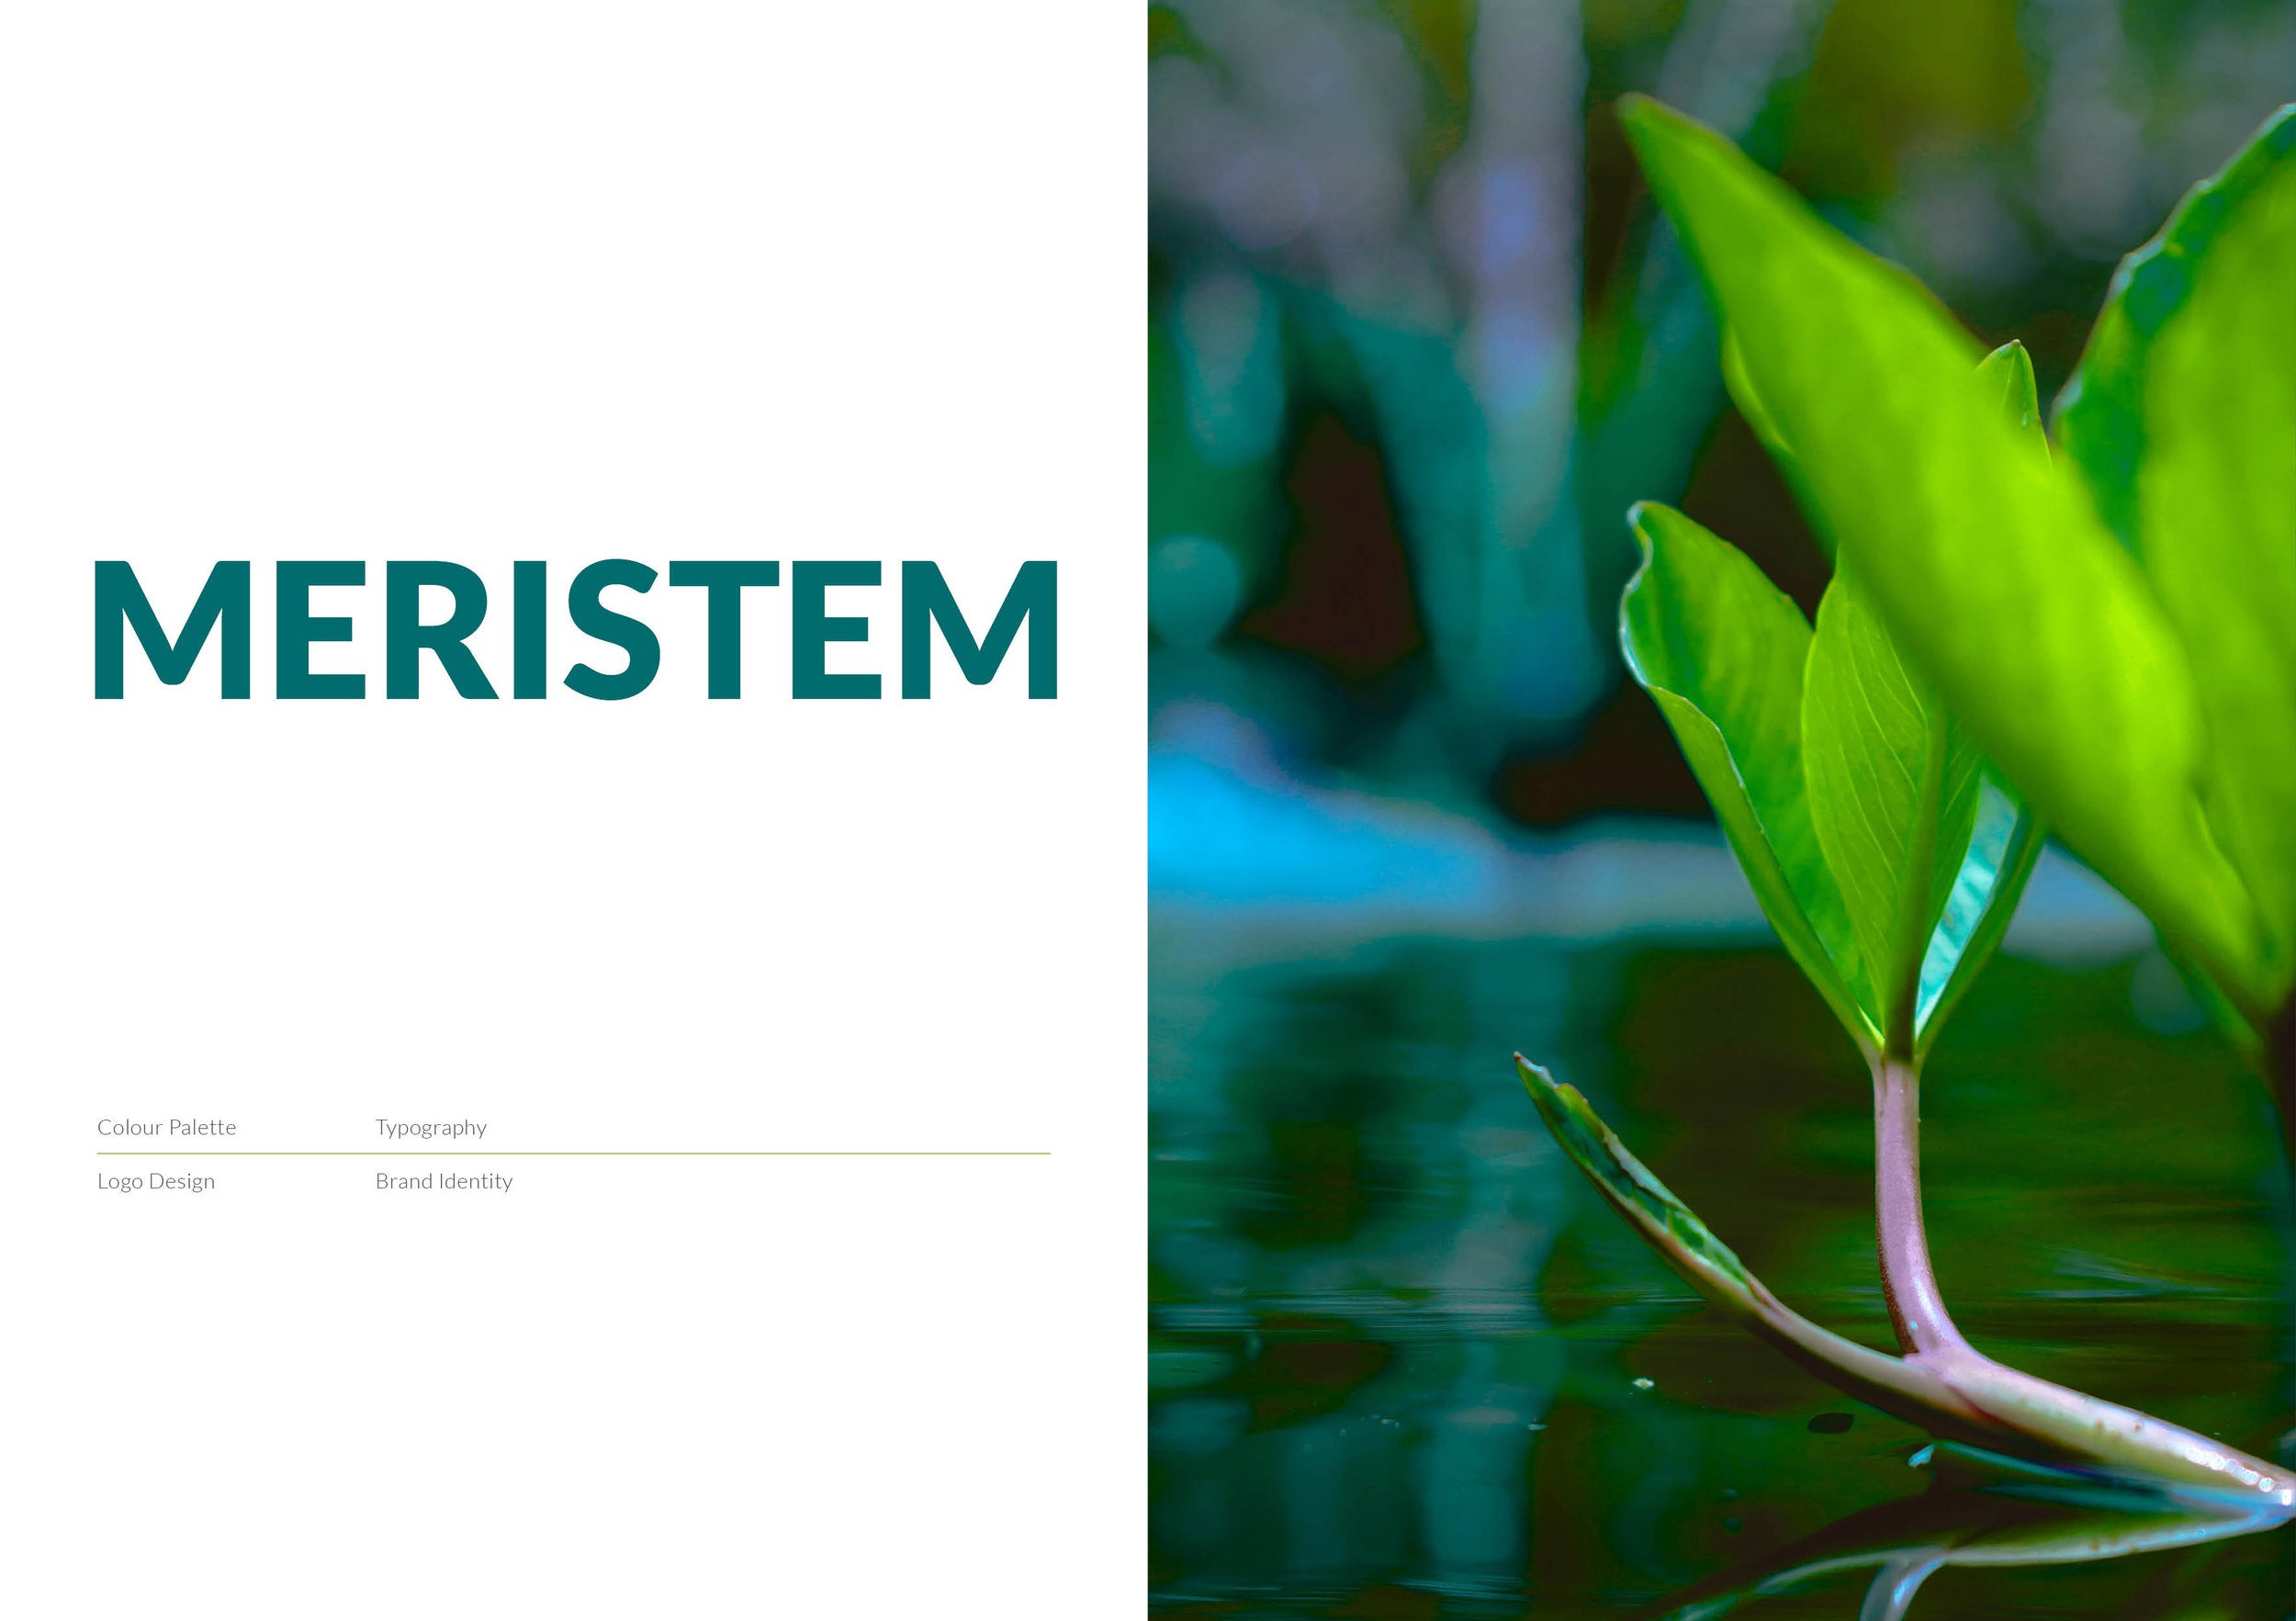 MERISTEM - Brand Identity.jpg